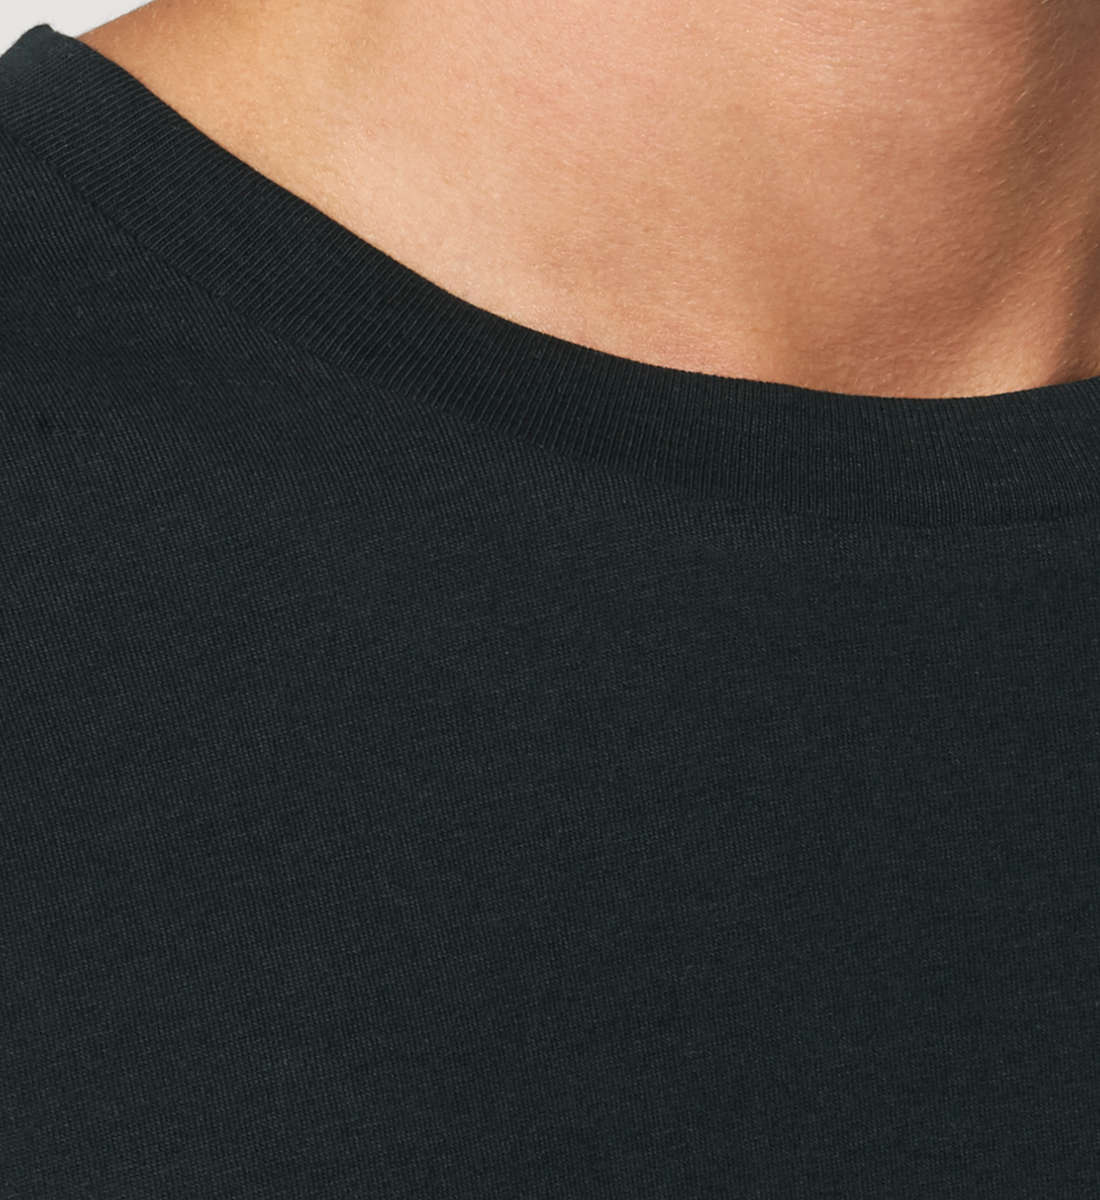 Schwarzes T-Shirt Unisex Relaxed Fit für Frauen und Männer bedruckt mit dem Design der Roger Rockawoo Kollektion monday is a whore